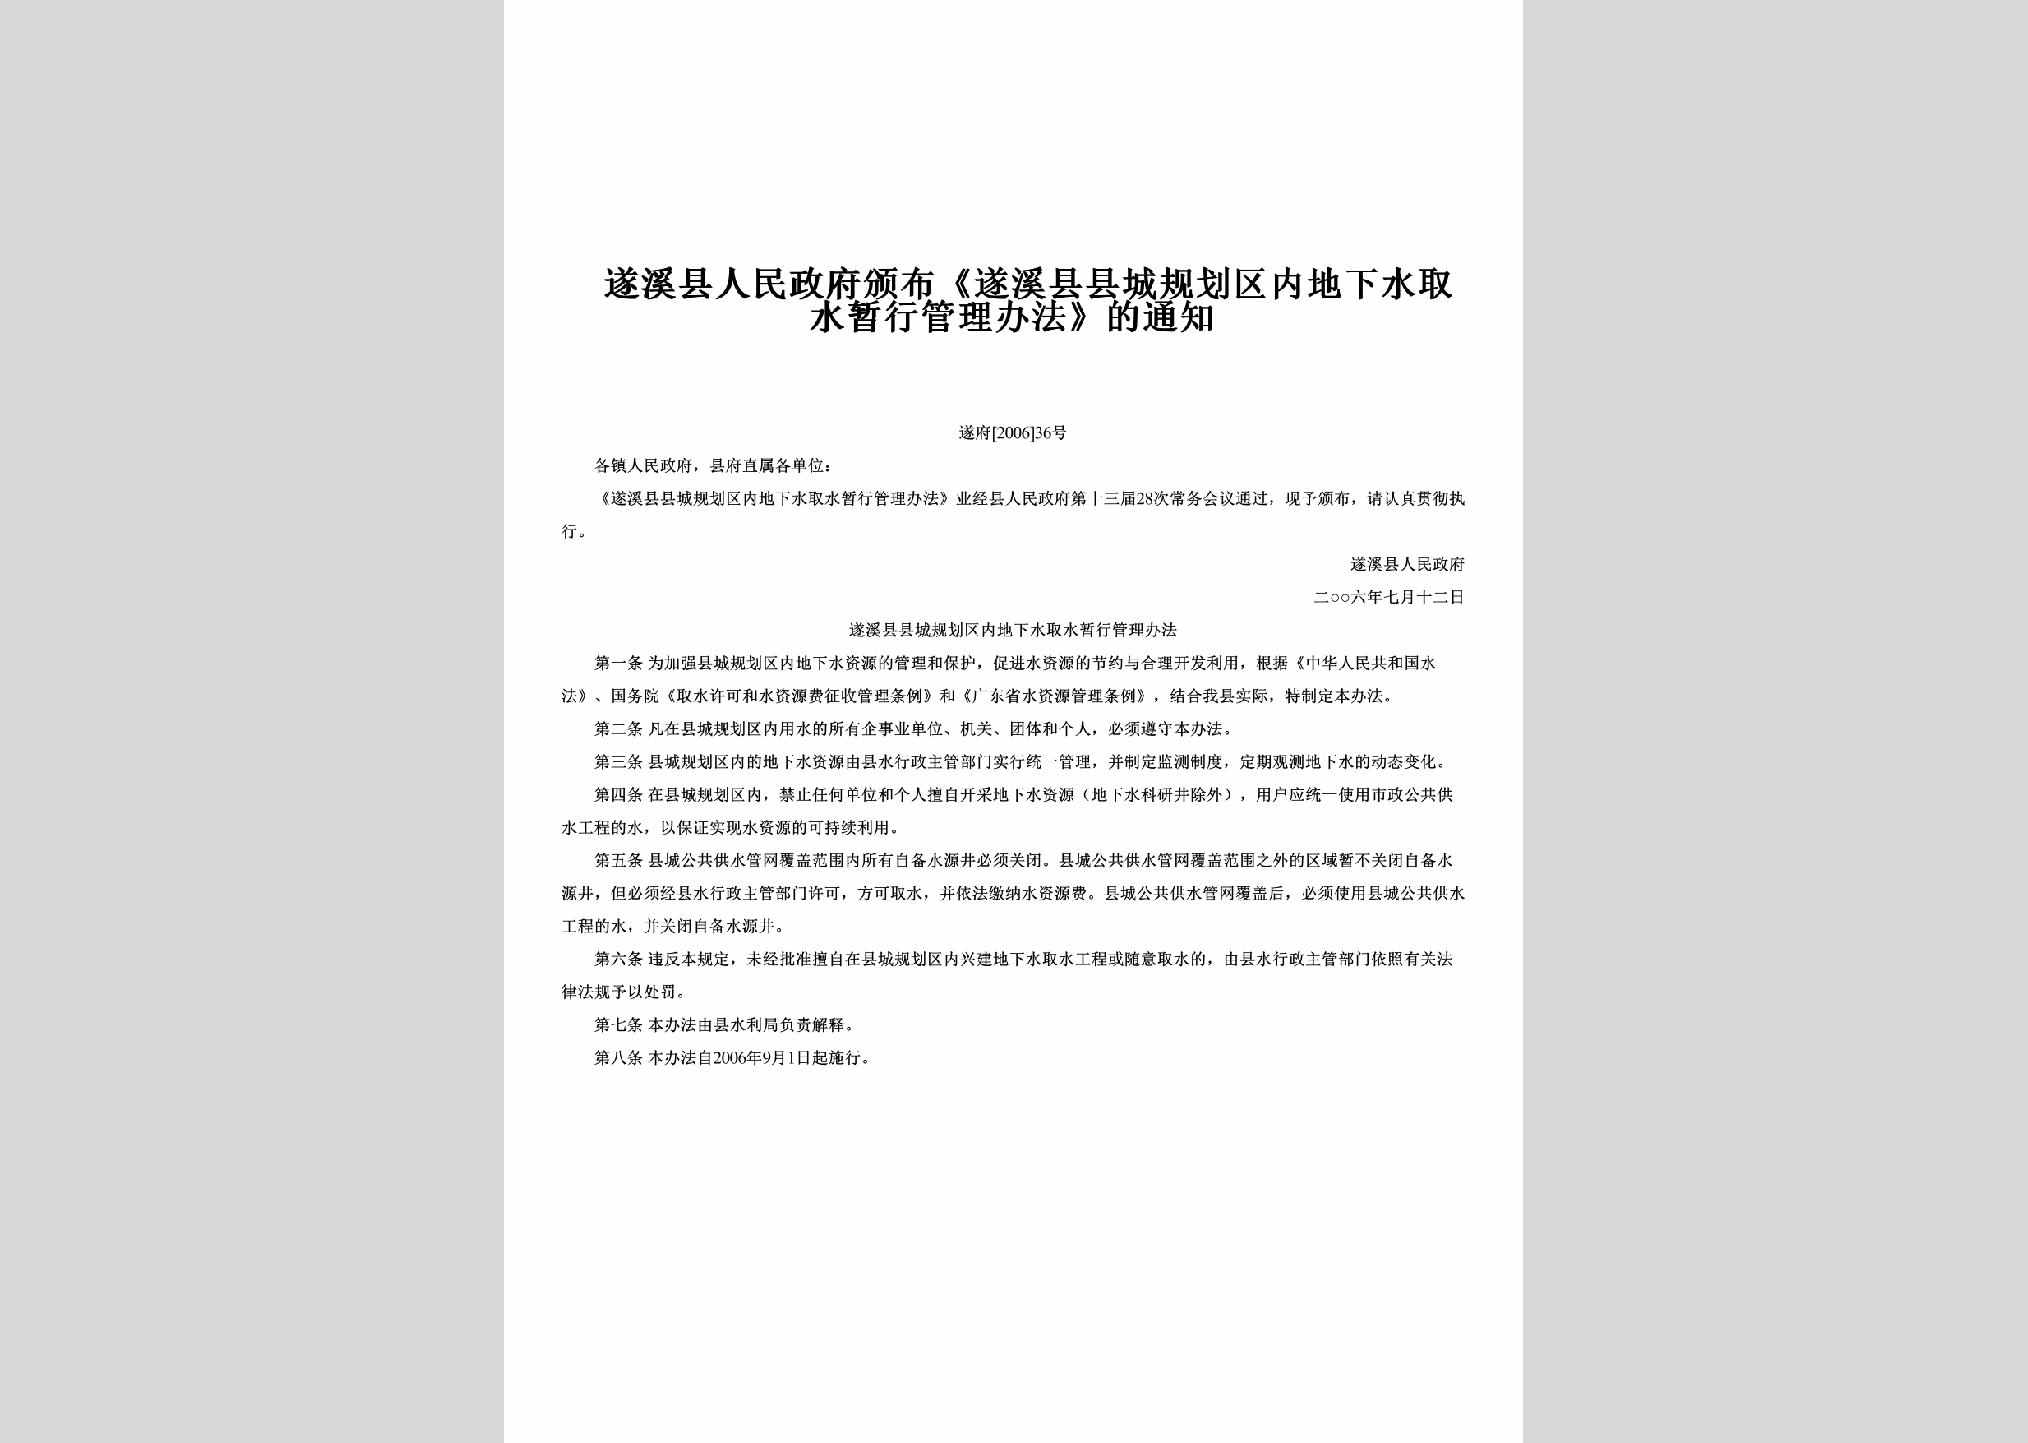 遂府[2006]36号：颁布《遂溪县县城规划区内地下水取水暂行管理办法》的通知